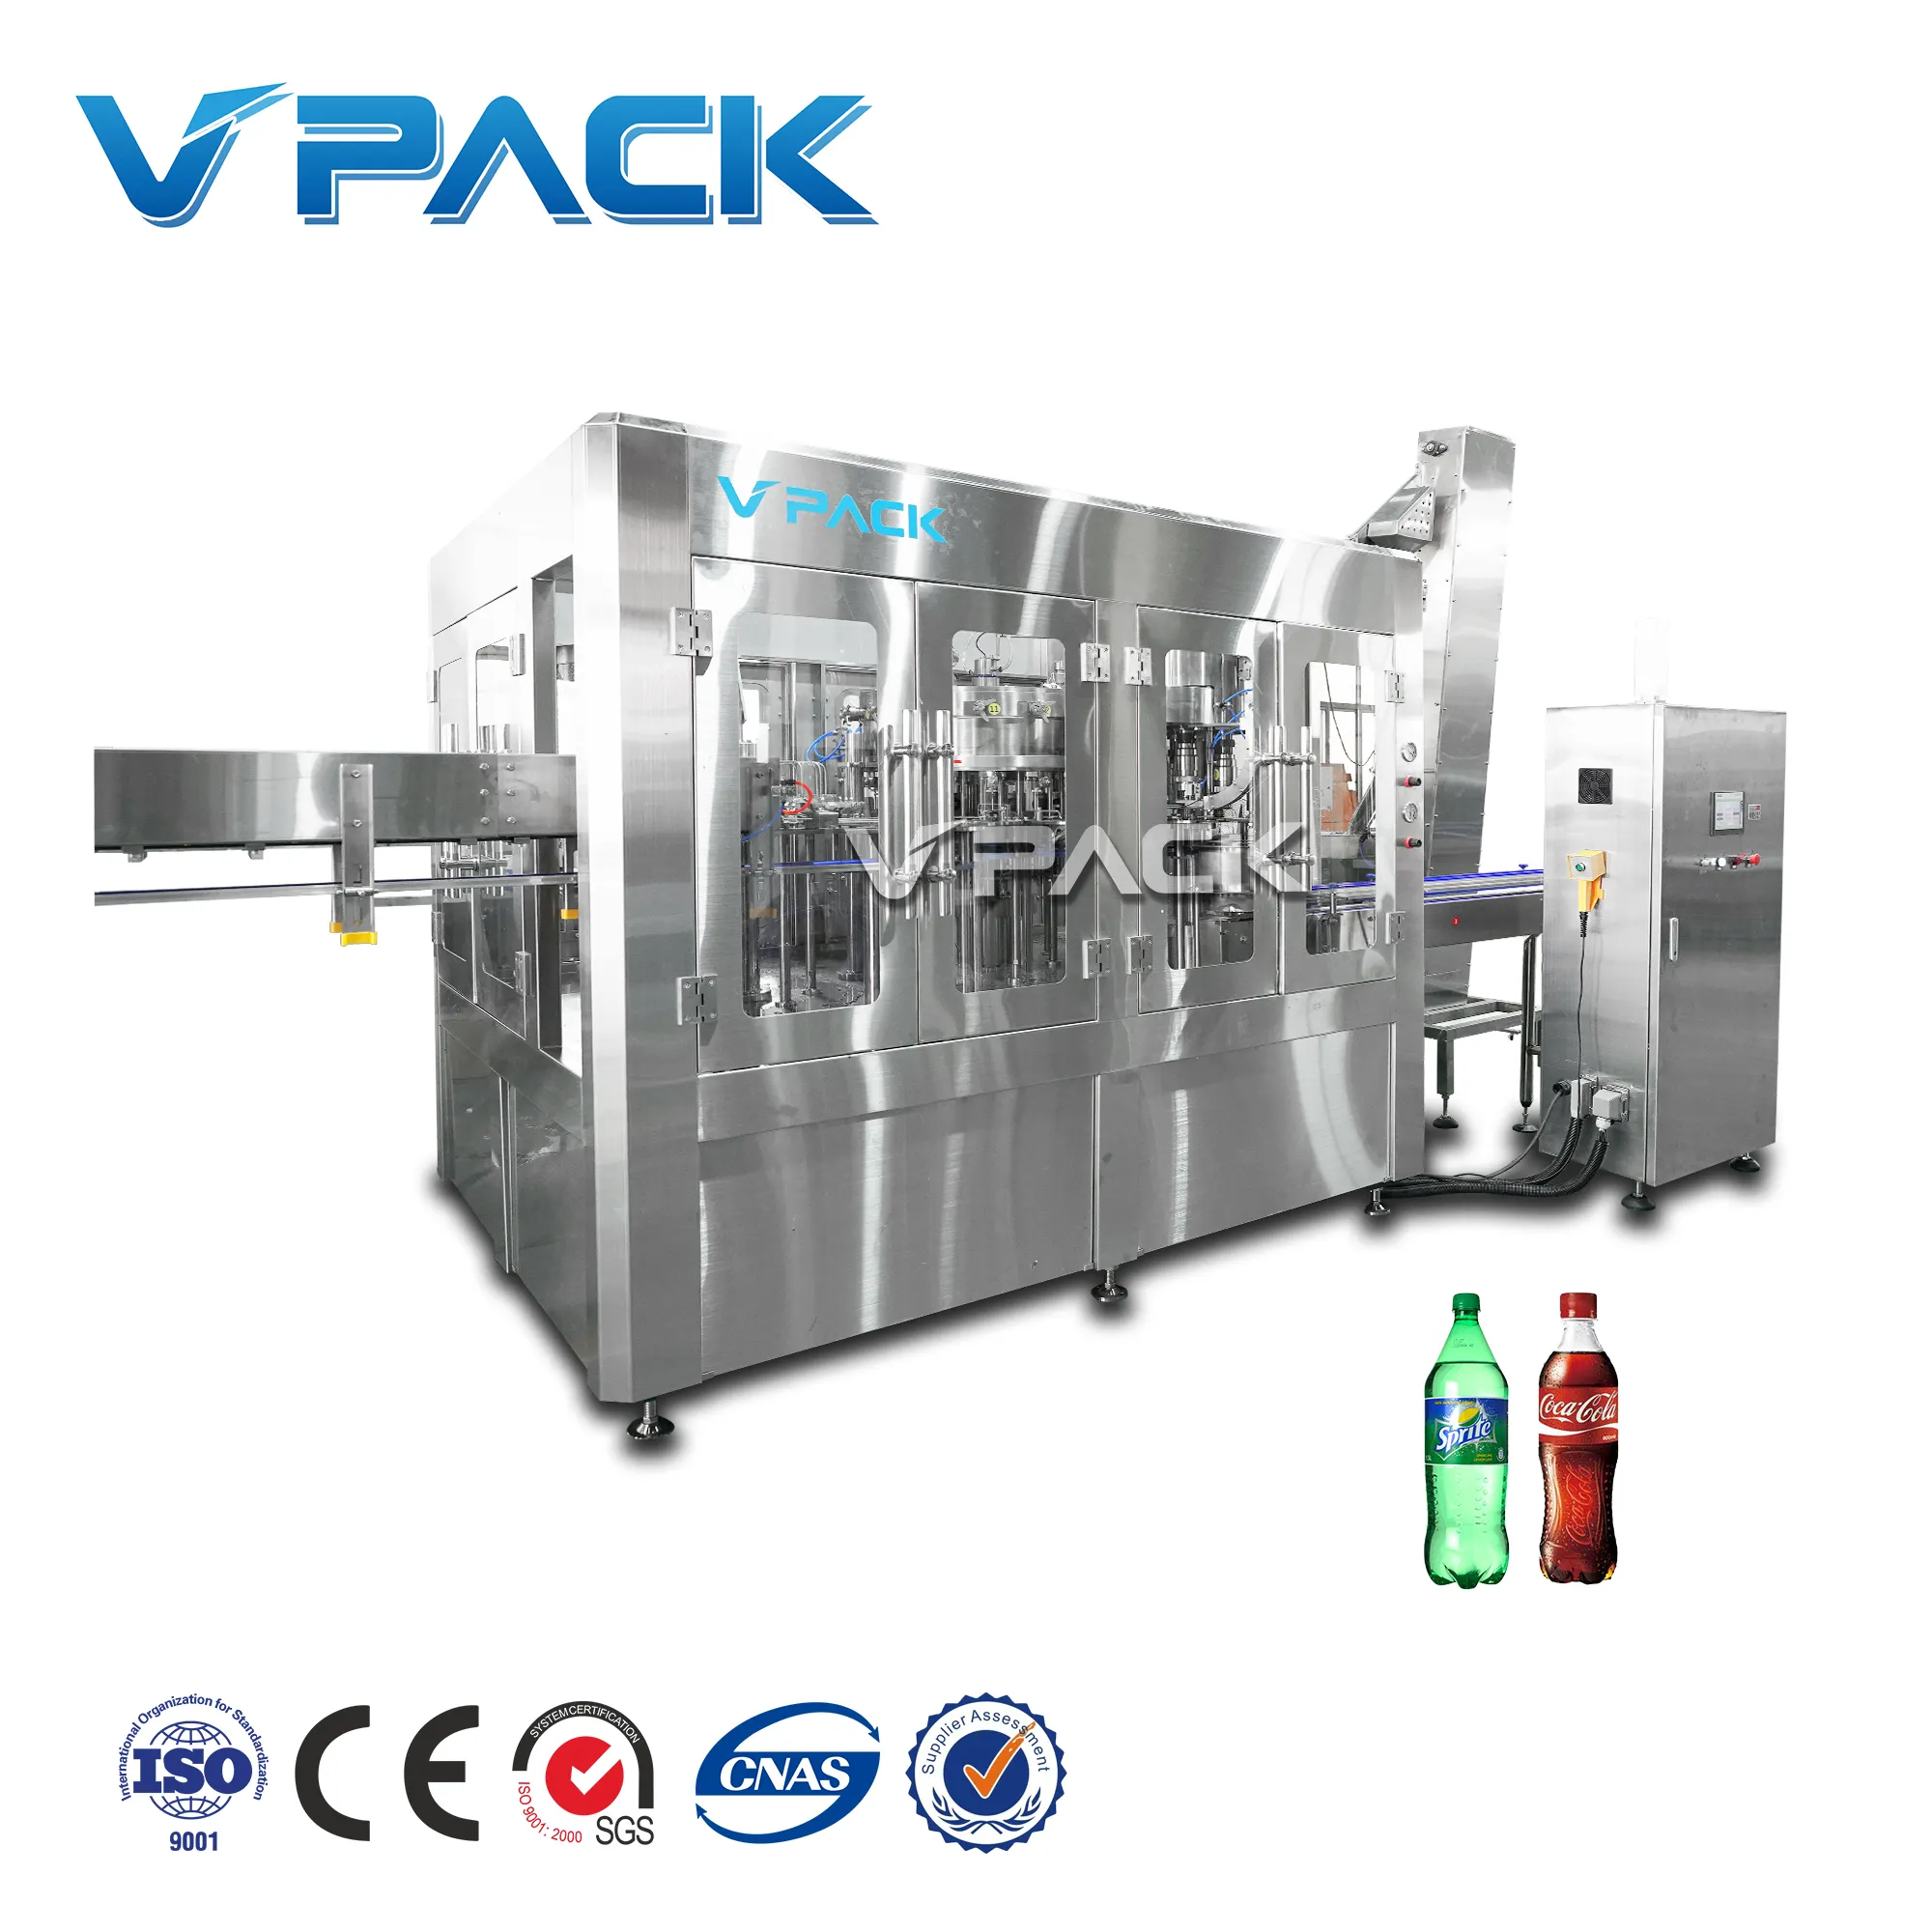 Automatische Tankmachine Voor Koolzuurhoudende Dranken Voor Huisdieren/Frisdrankmachines/Frisdrankbottelapparatuur/Zhangjiagang